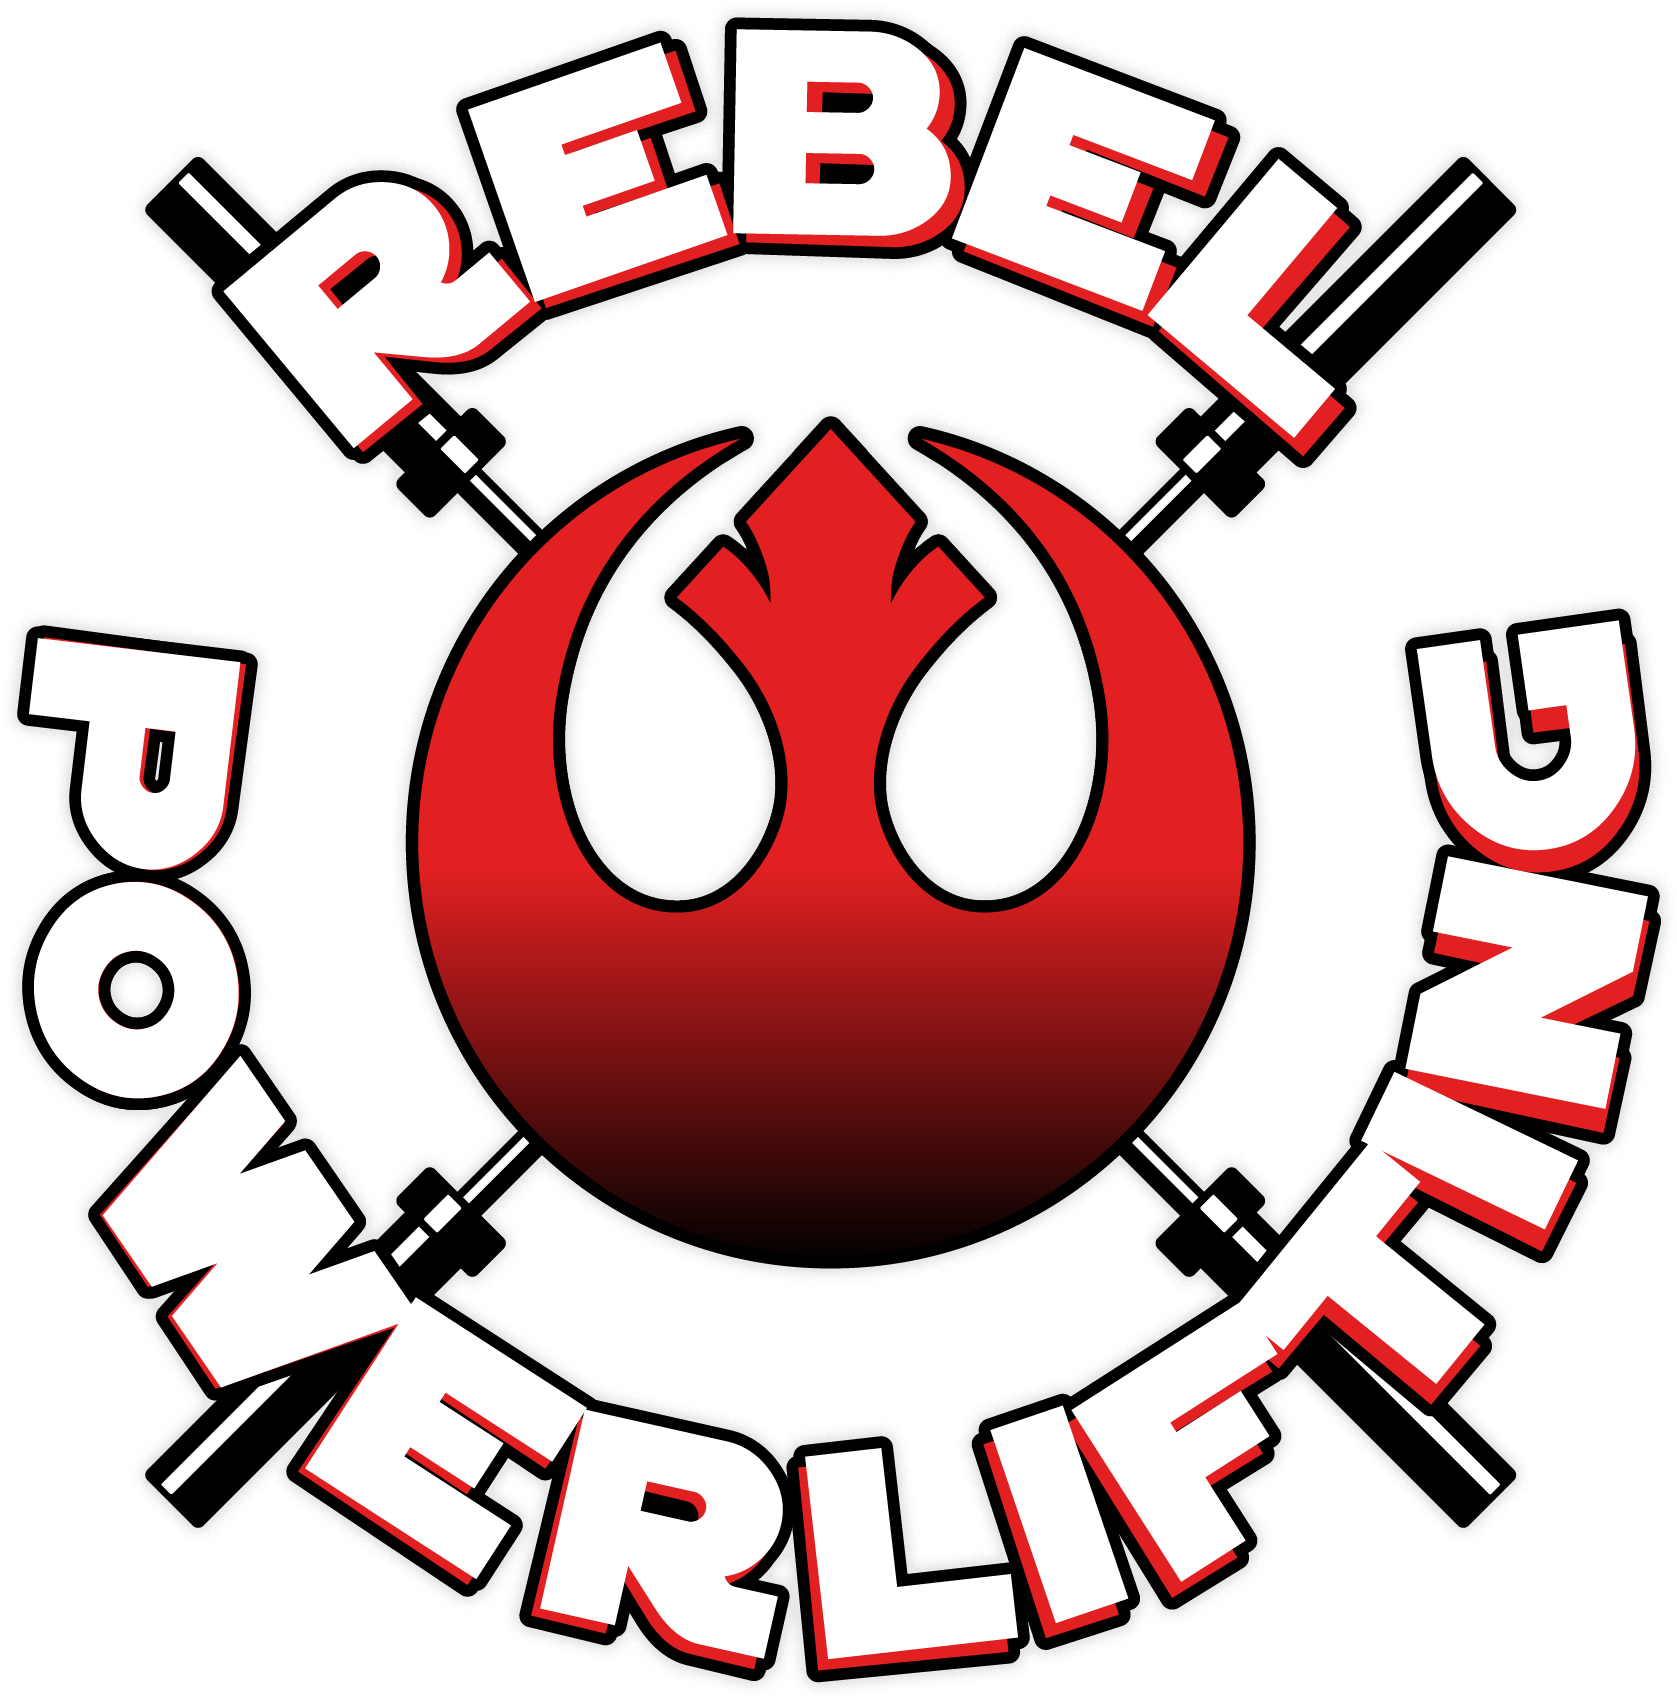 Rebel Powerlifting - Rebel Powerlifting (1766x1773)